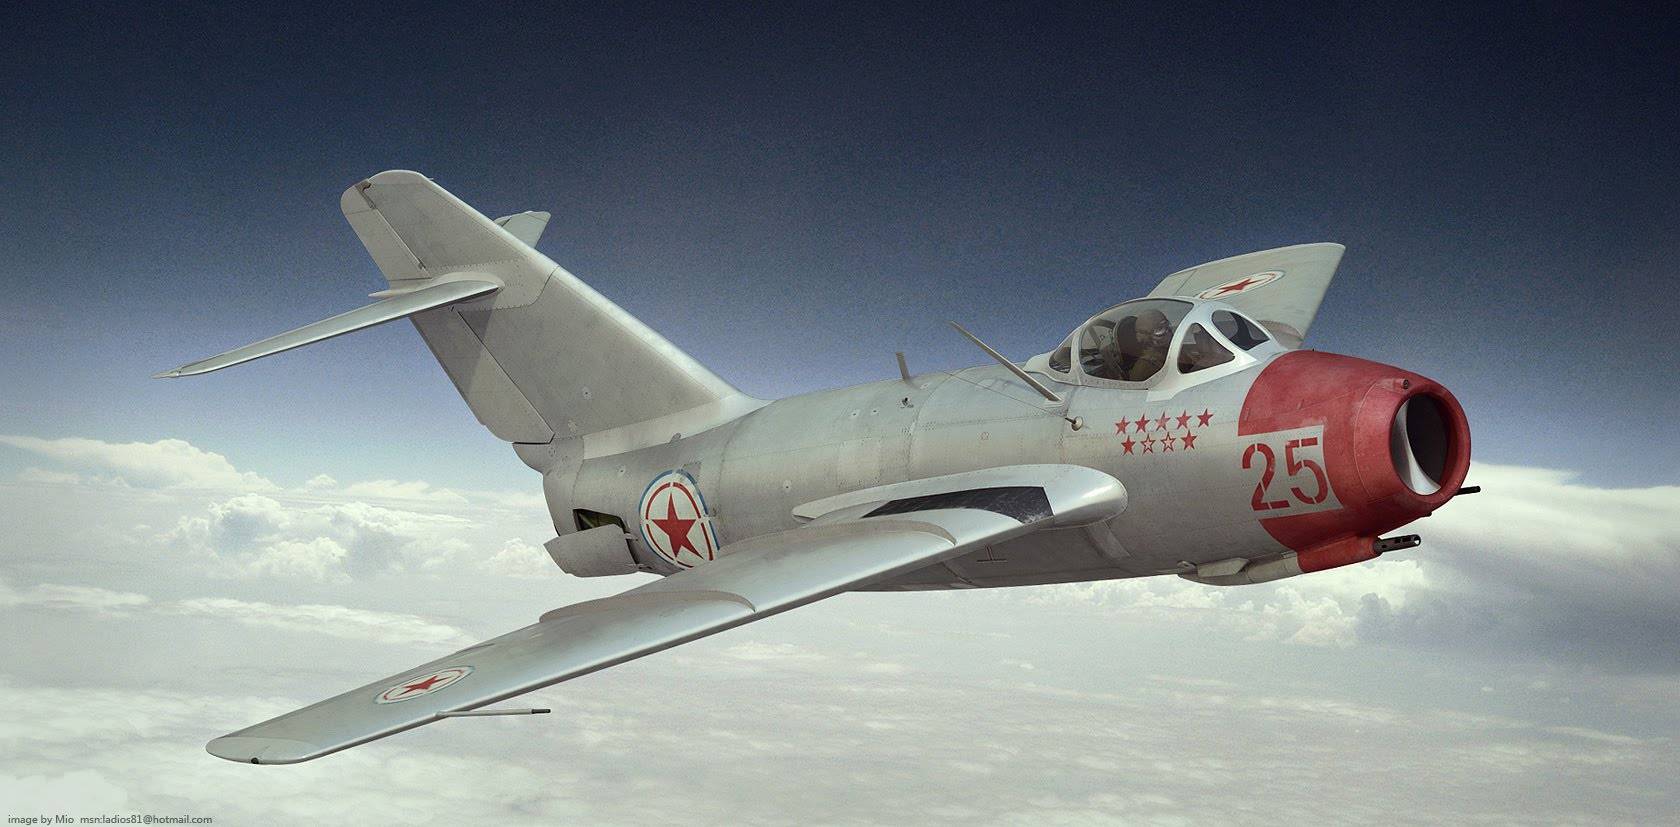 Самолет су-9. фото. история. характеристики.